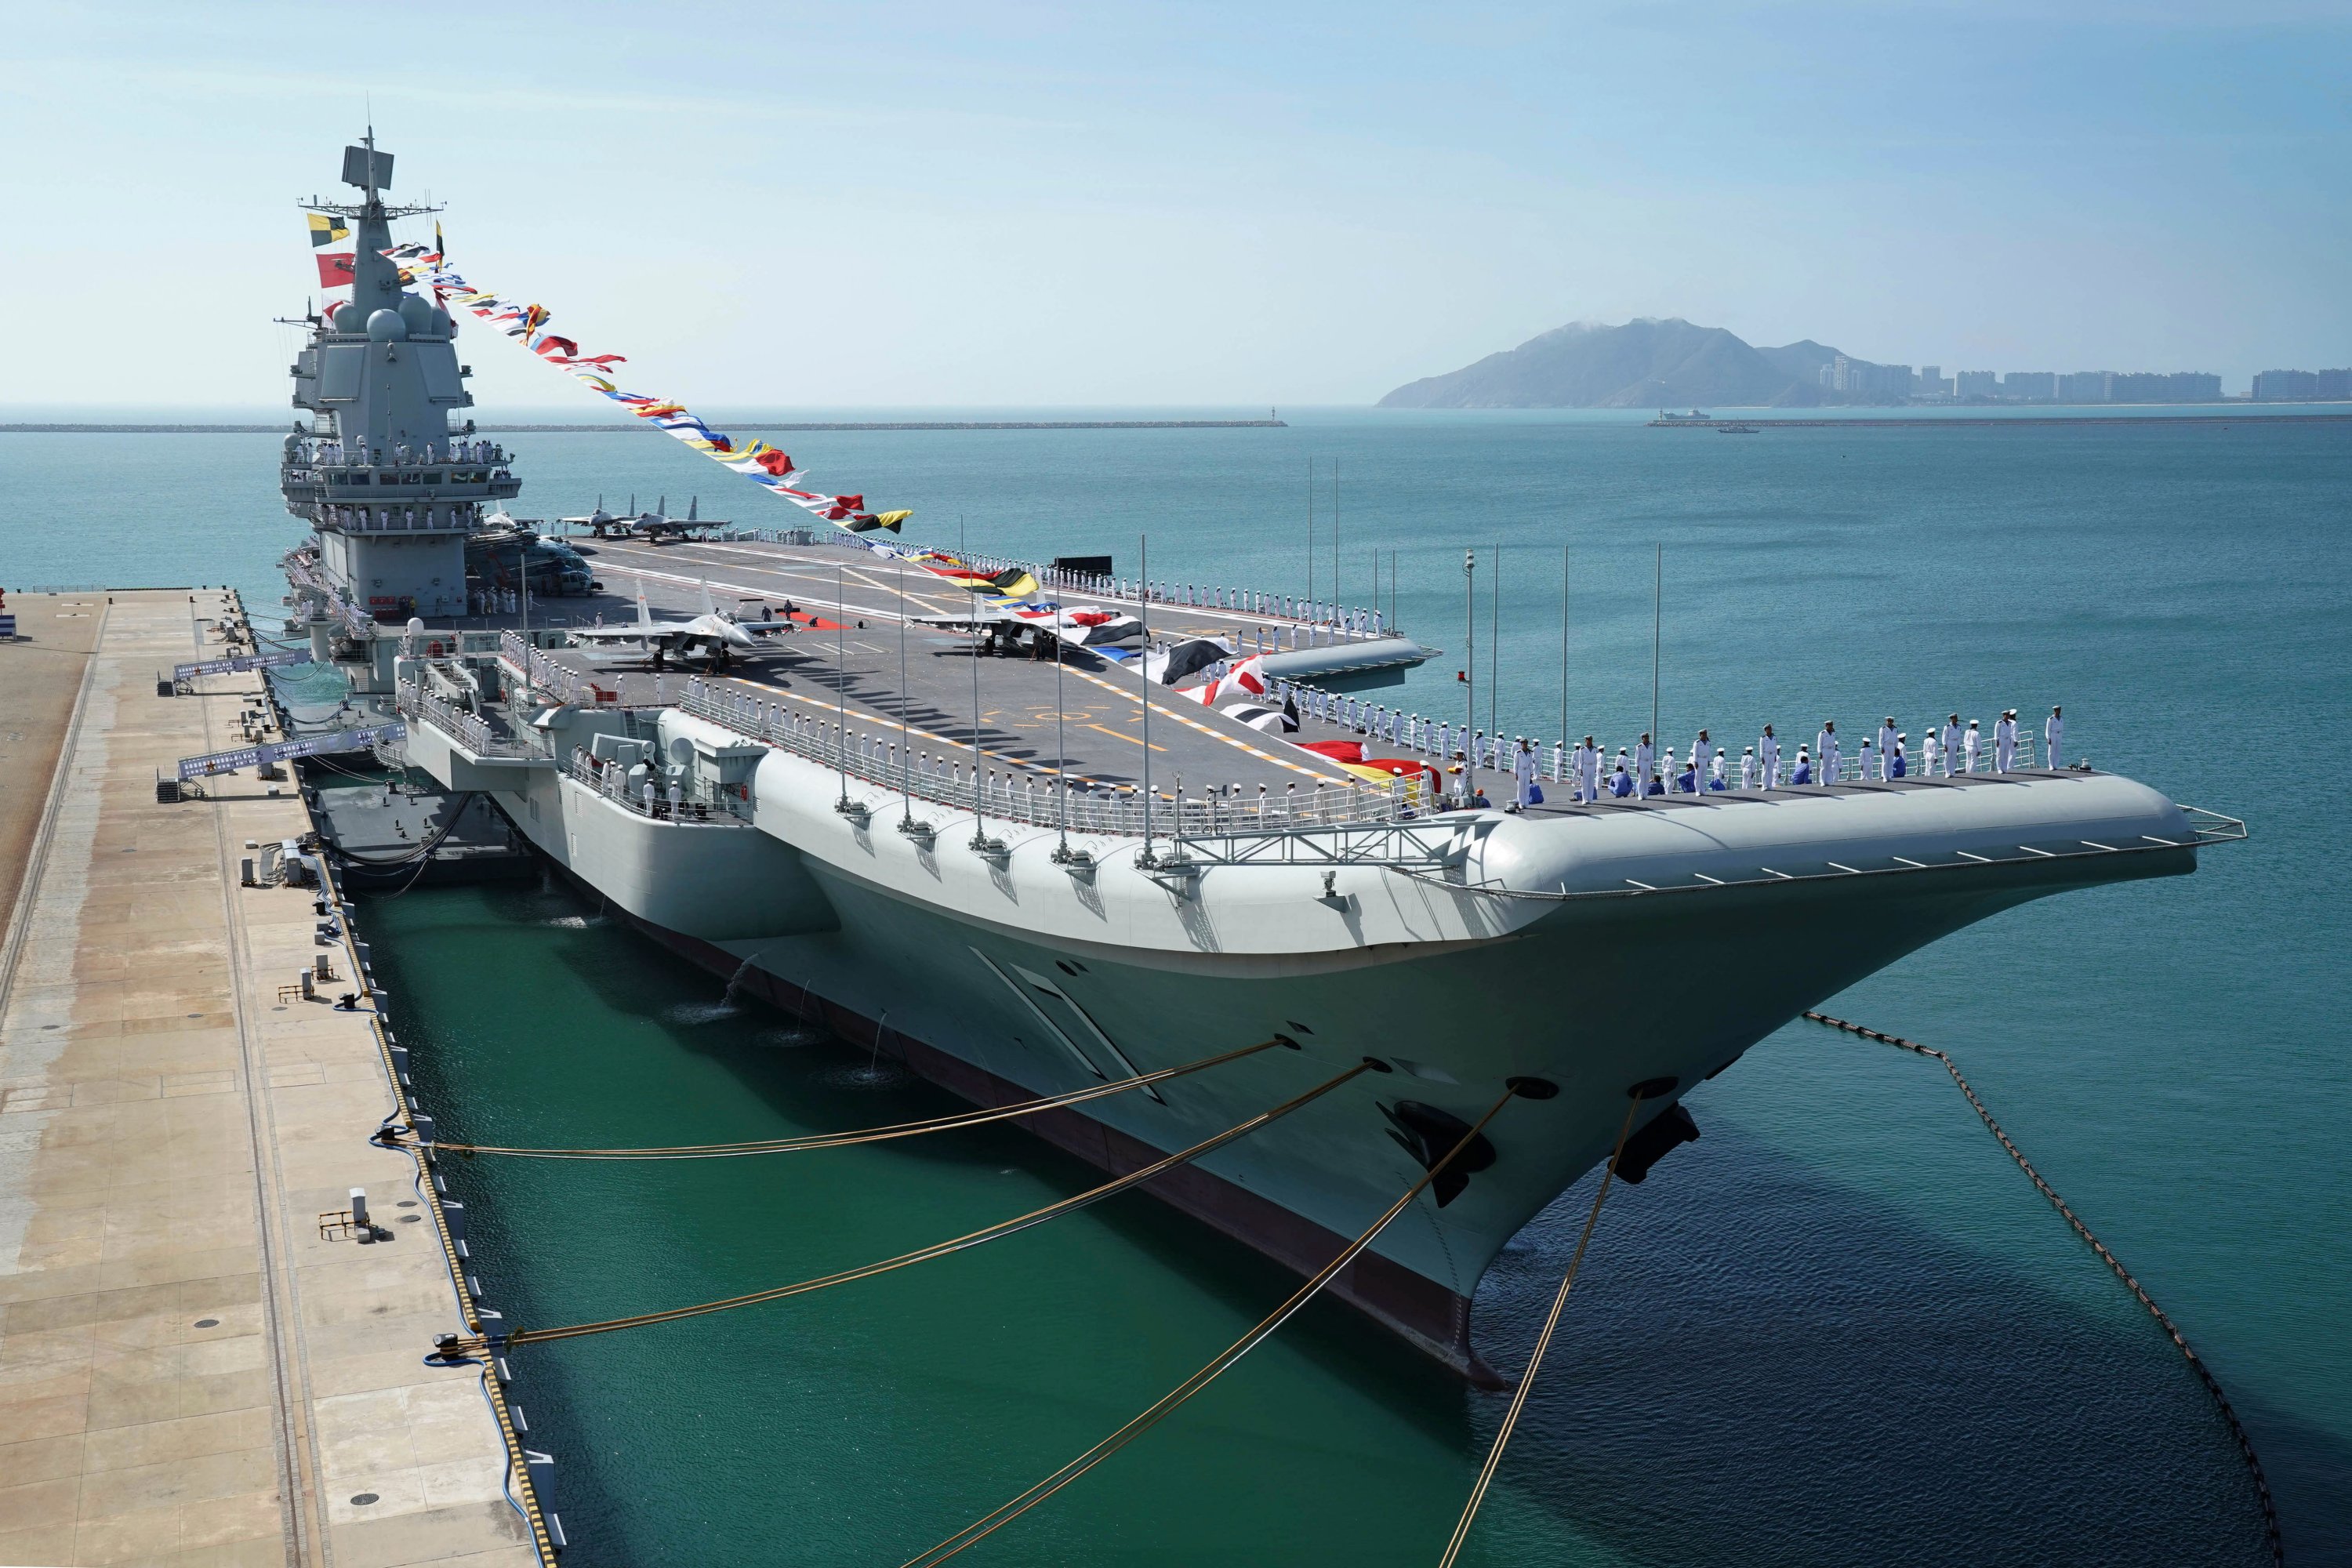 China indigenous aircraft carrier begins sea trials | Daily Sabah